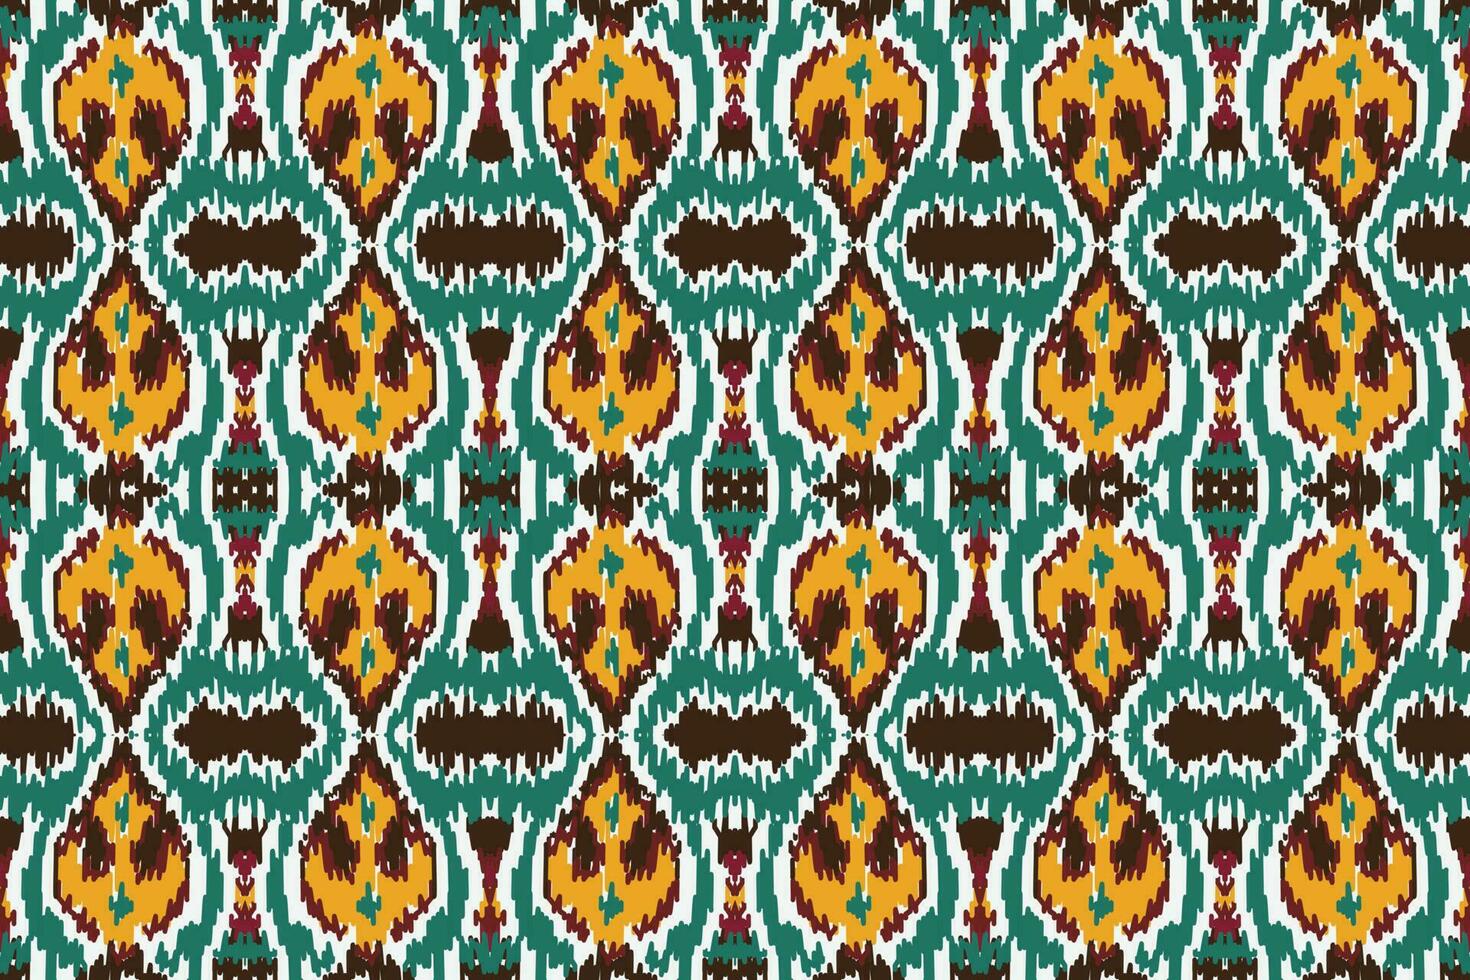 afrikansk ikat blommig paisley broderi bakgrund. geometrisk etnisk orientalisk mönster traditionell. ikat blomma stil abstrakt vektor illustration. design för skriva ut textur, tyg, saree, sari, matta.